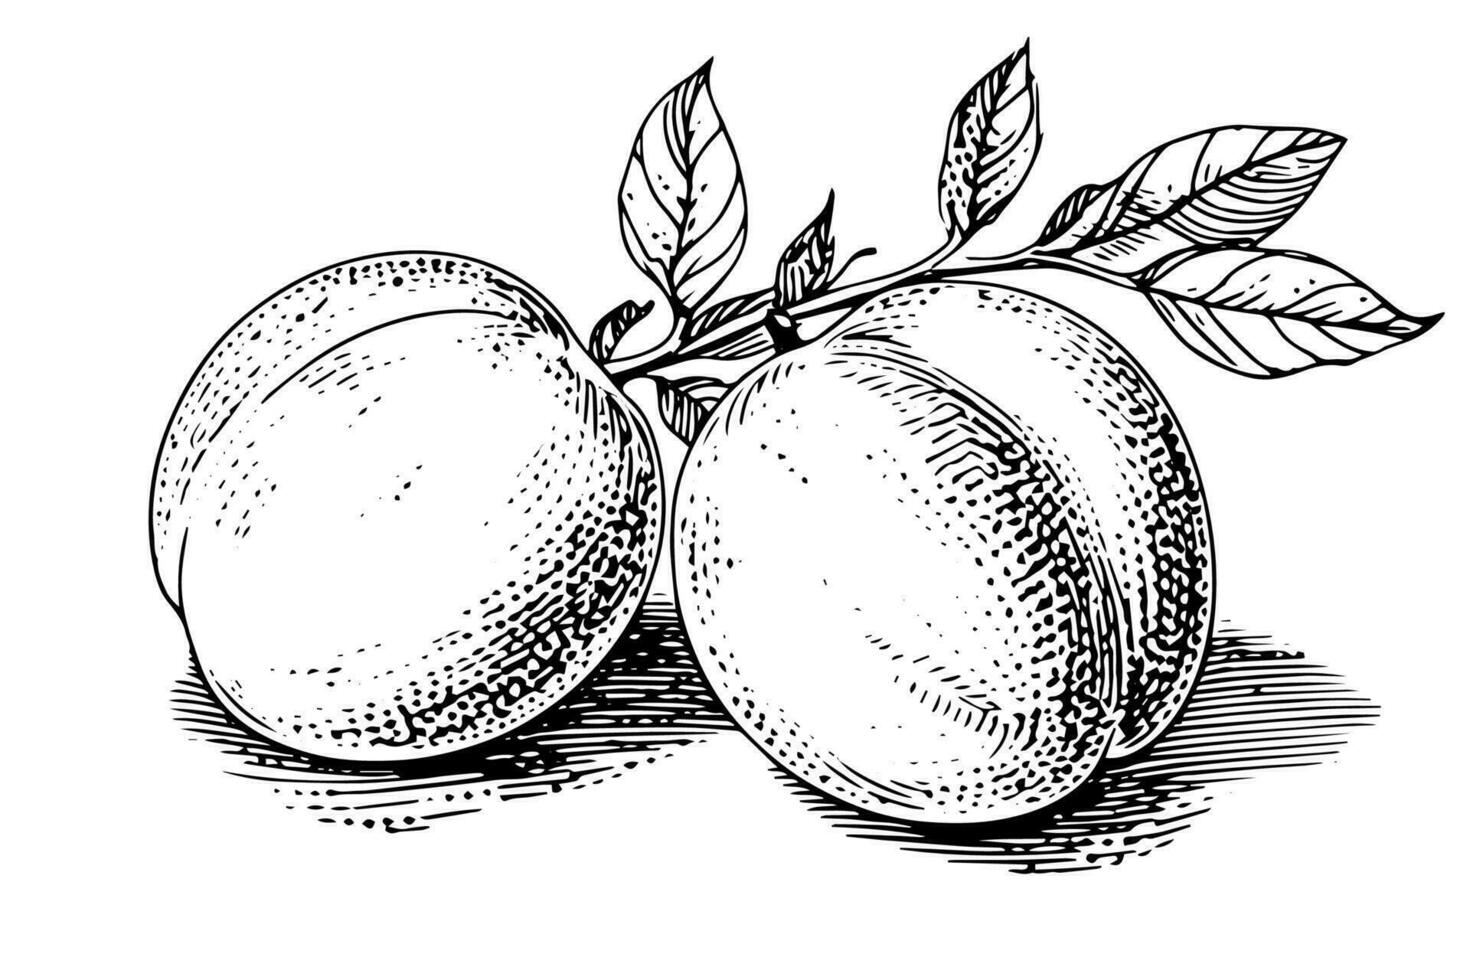 perzik of abrikoos fruit hand- getrokken schetsen in gegraveerde stijl. vector